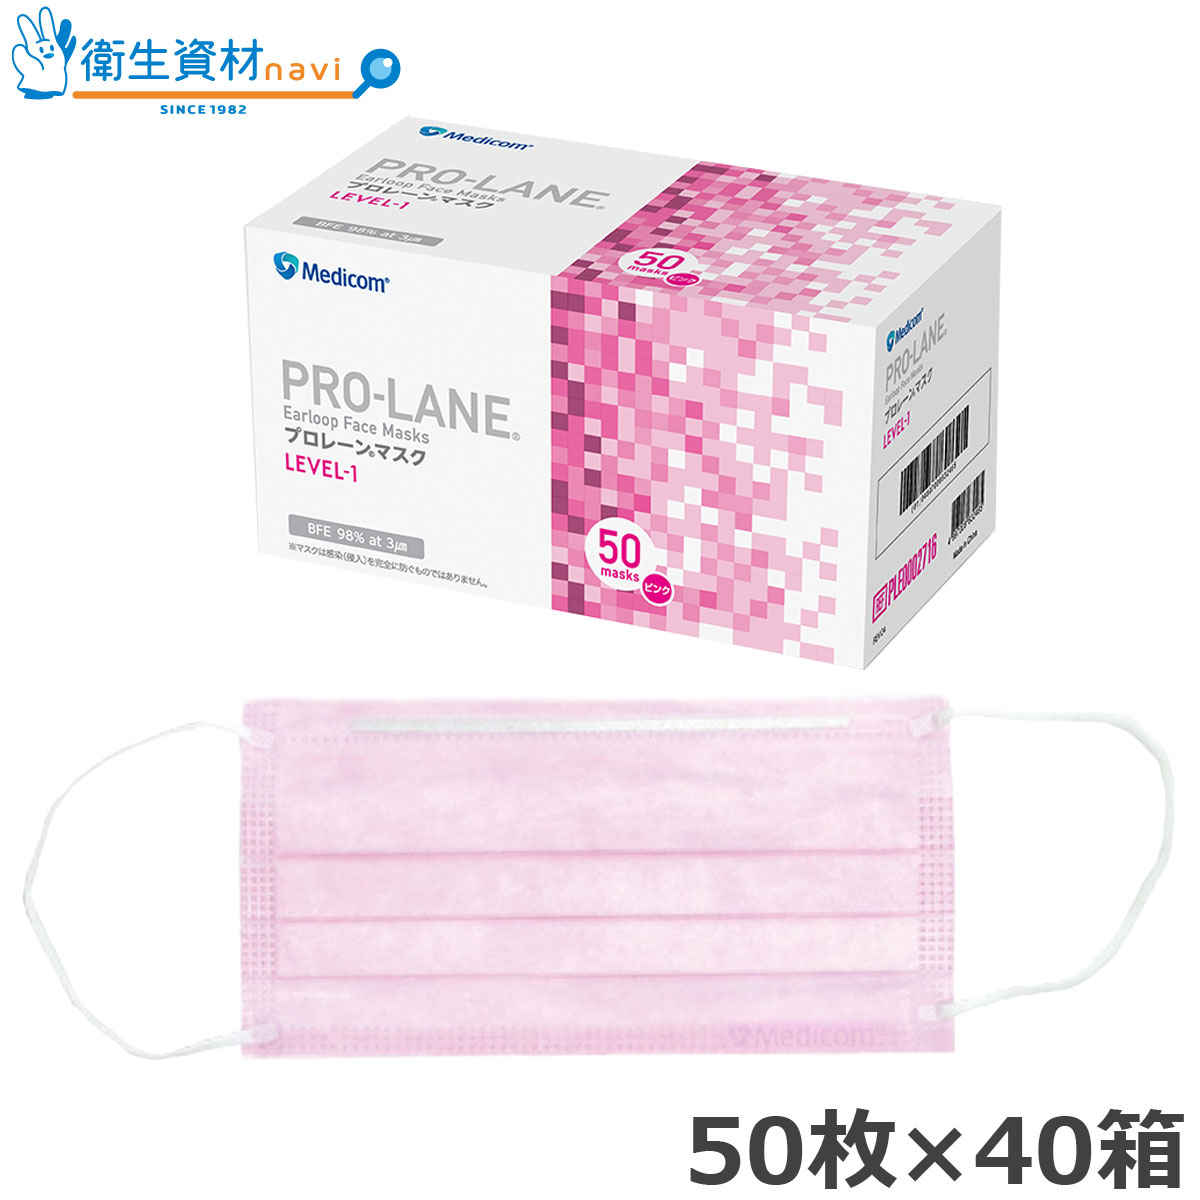 PRO-LANE(プロレーン) マスク LEVEL-1 ピンク レギュラーサイズ PLE0002716 (2,000枚)